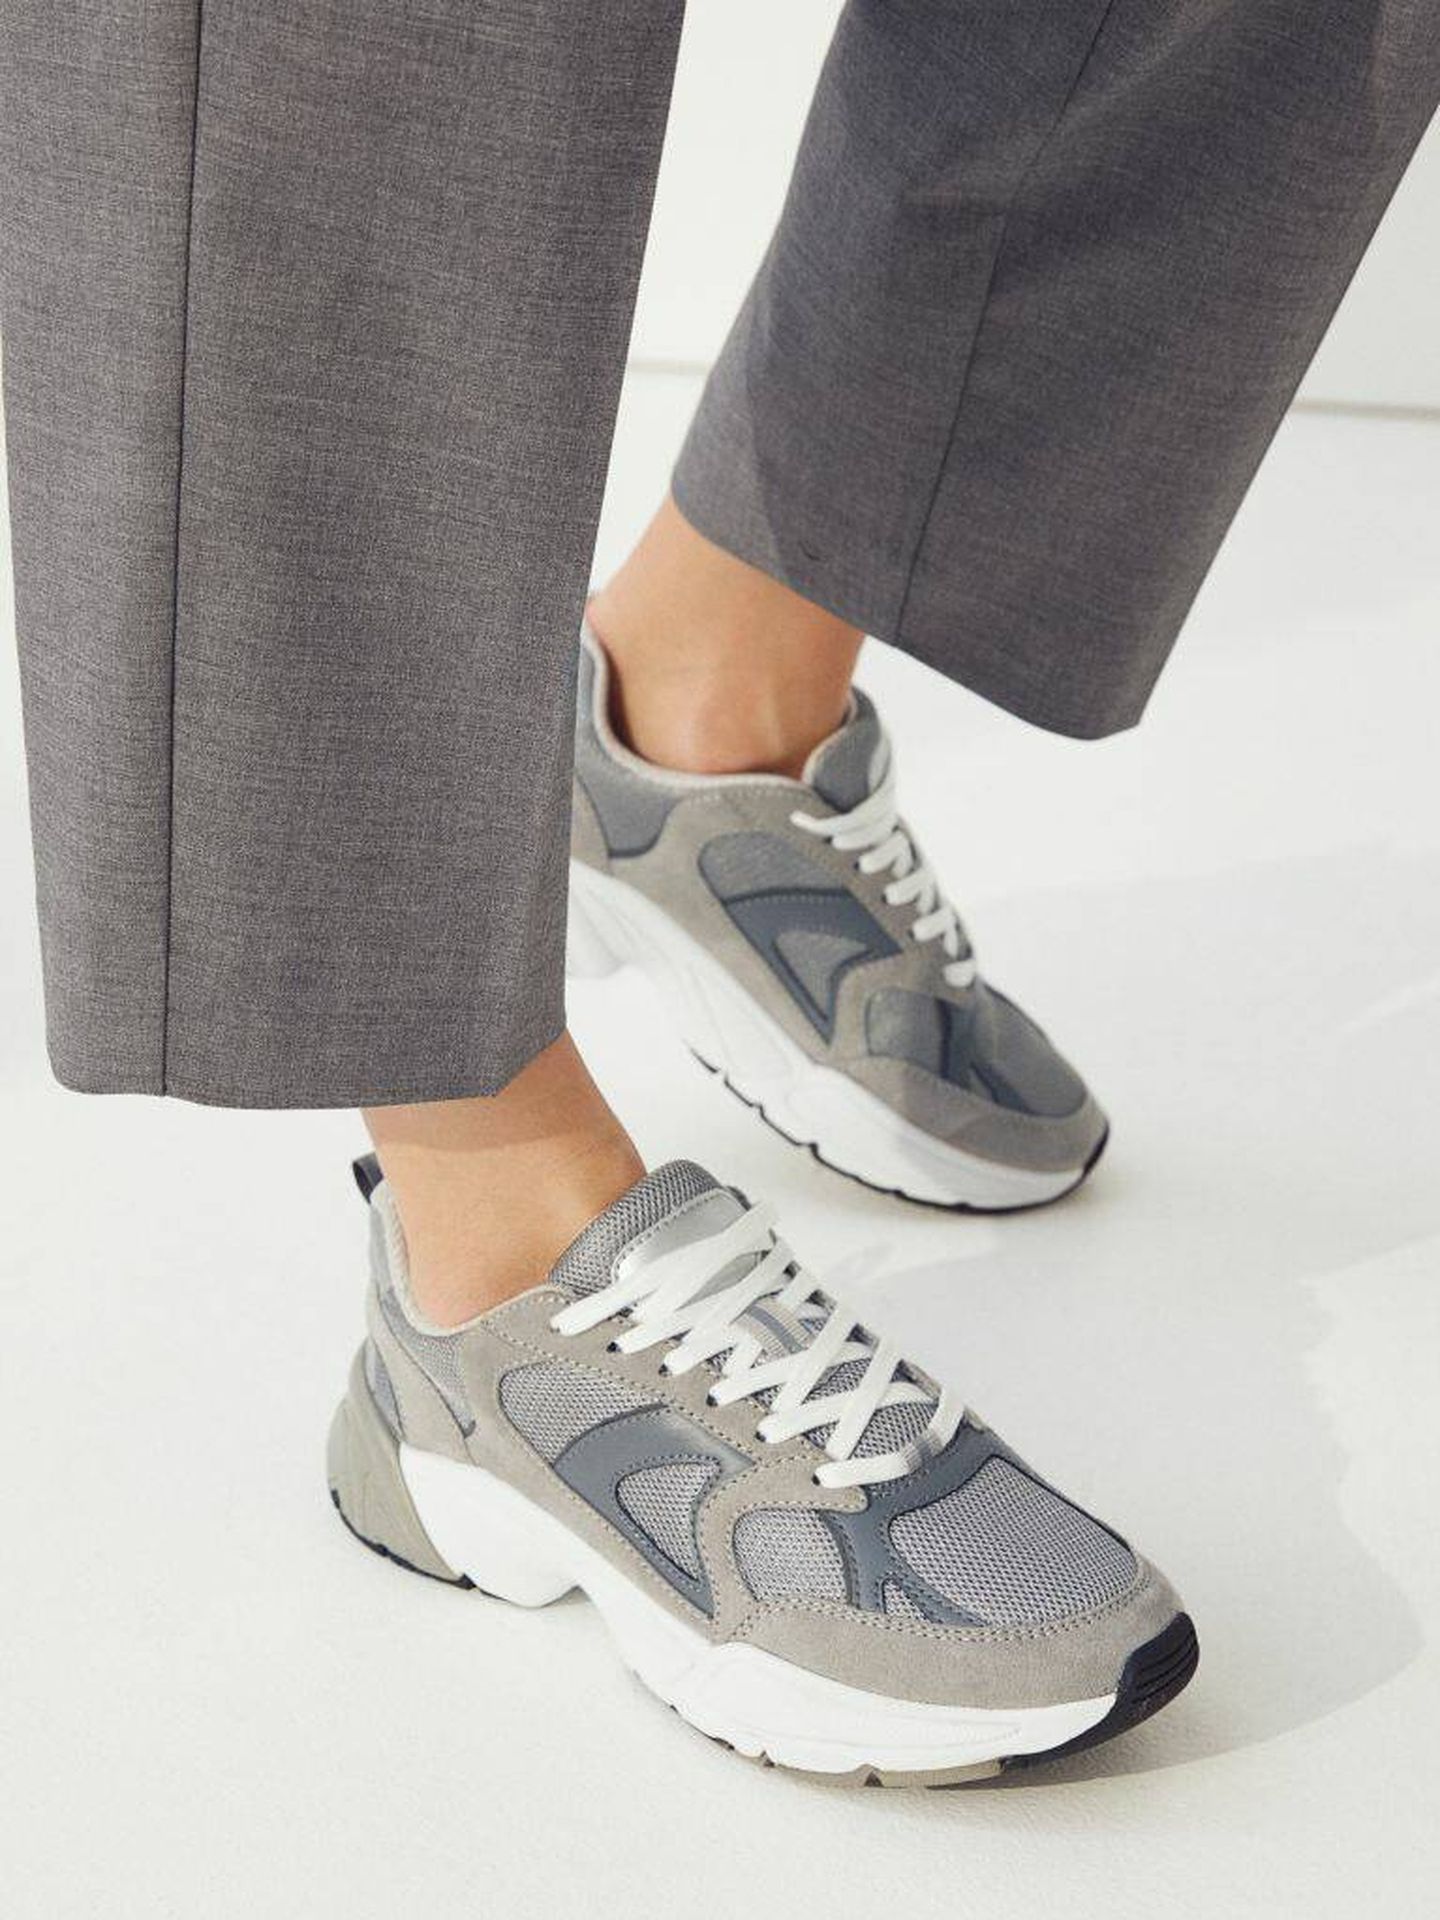 Indirecto Llevando Dos grados H&M tiene las zapatillas deportivas grises de moda en clave low cost